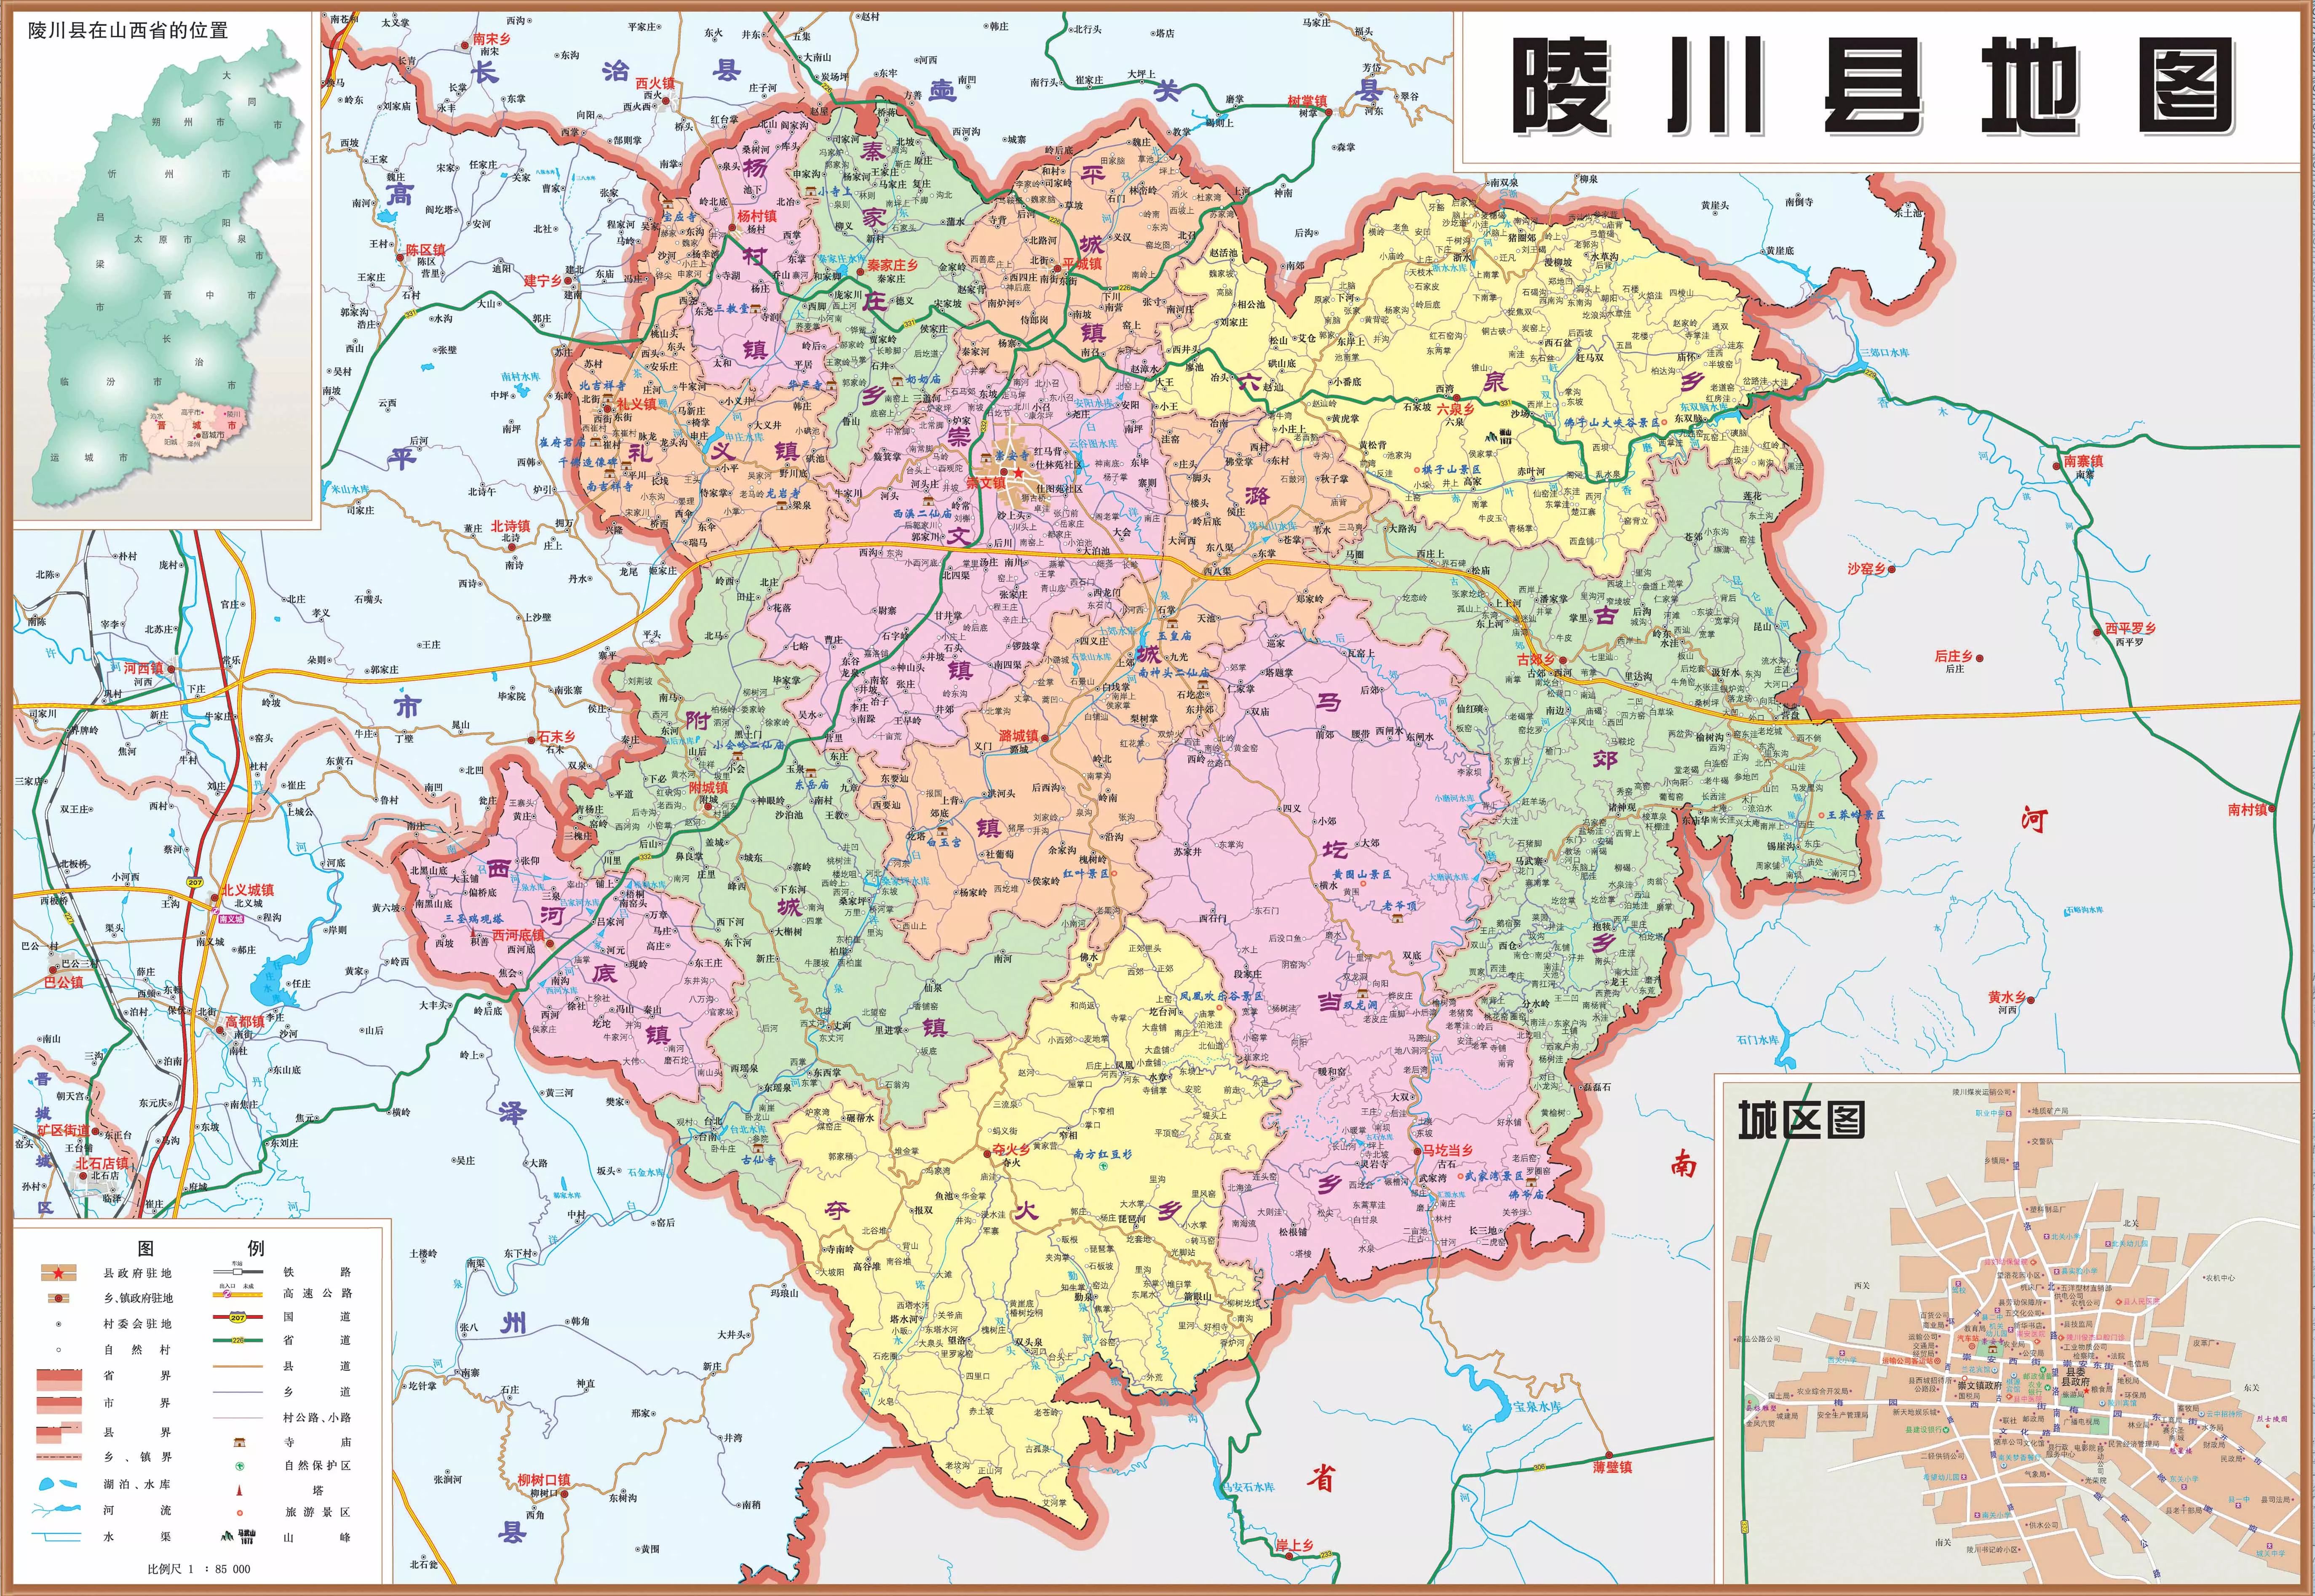 陵川县 陵川县位于山西省东南部, 太行山南端最高地带,隶属于山西省